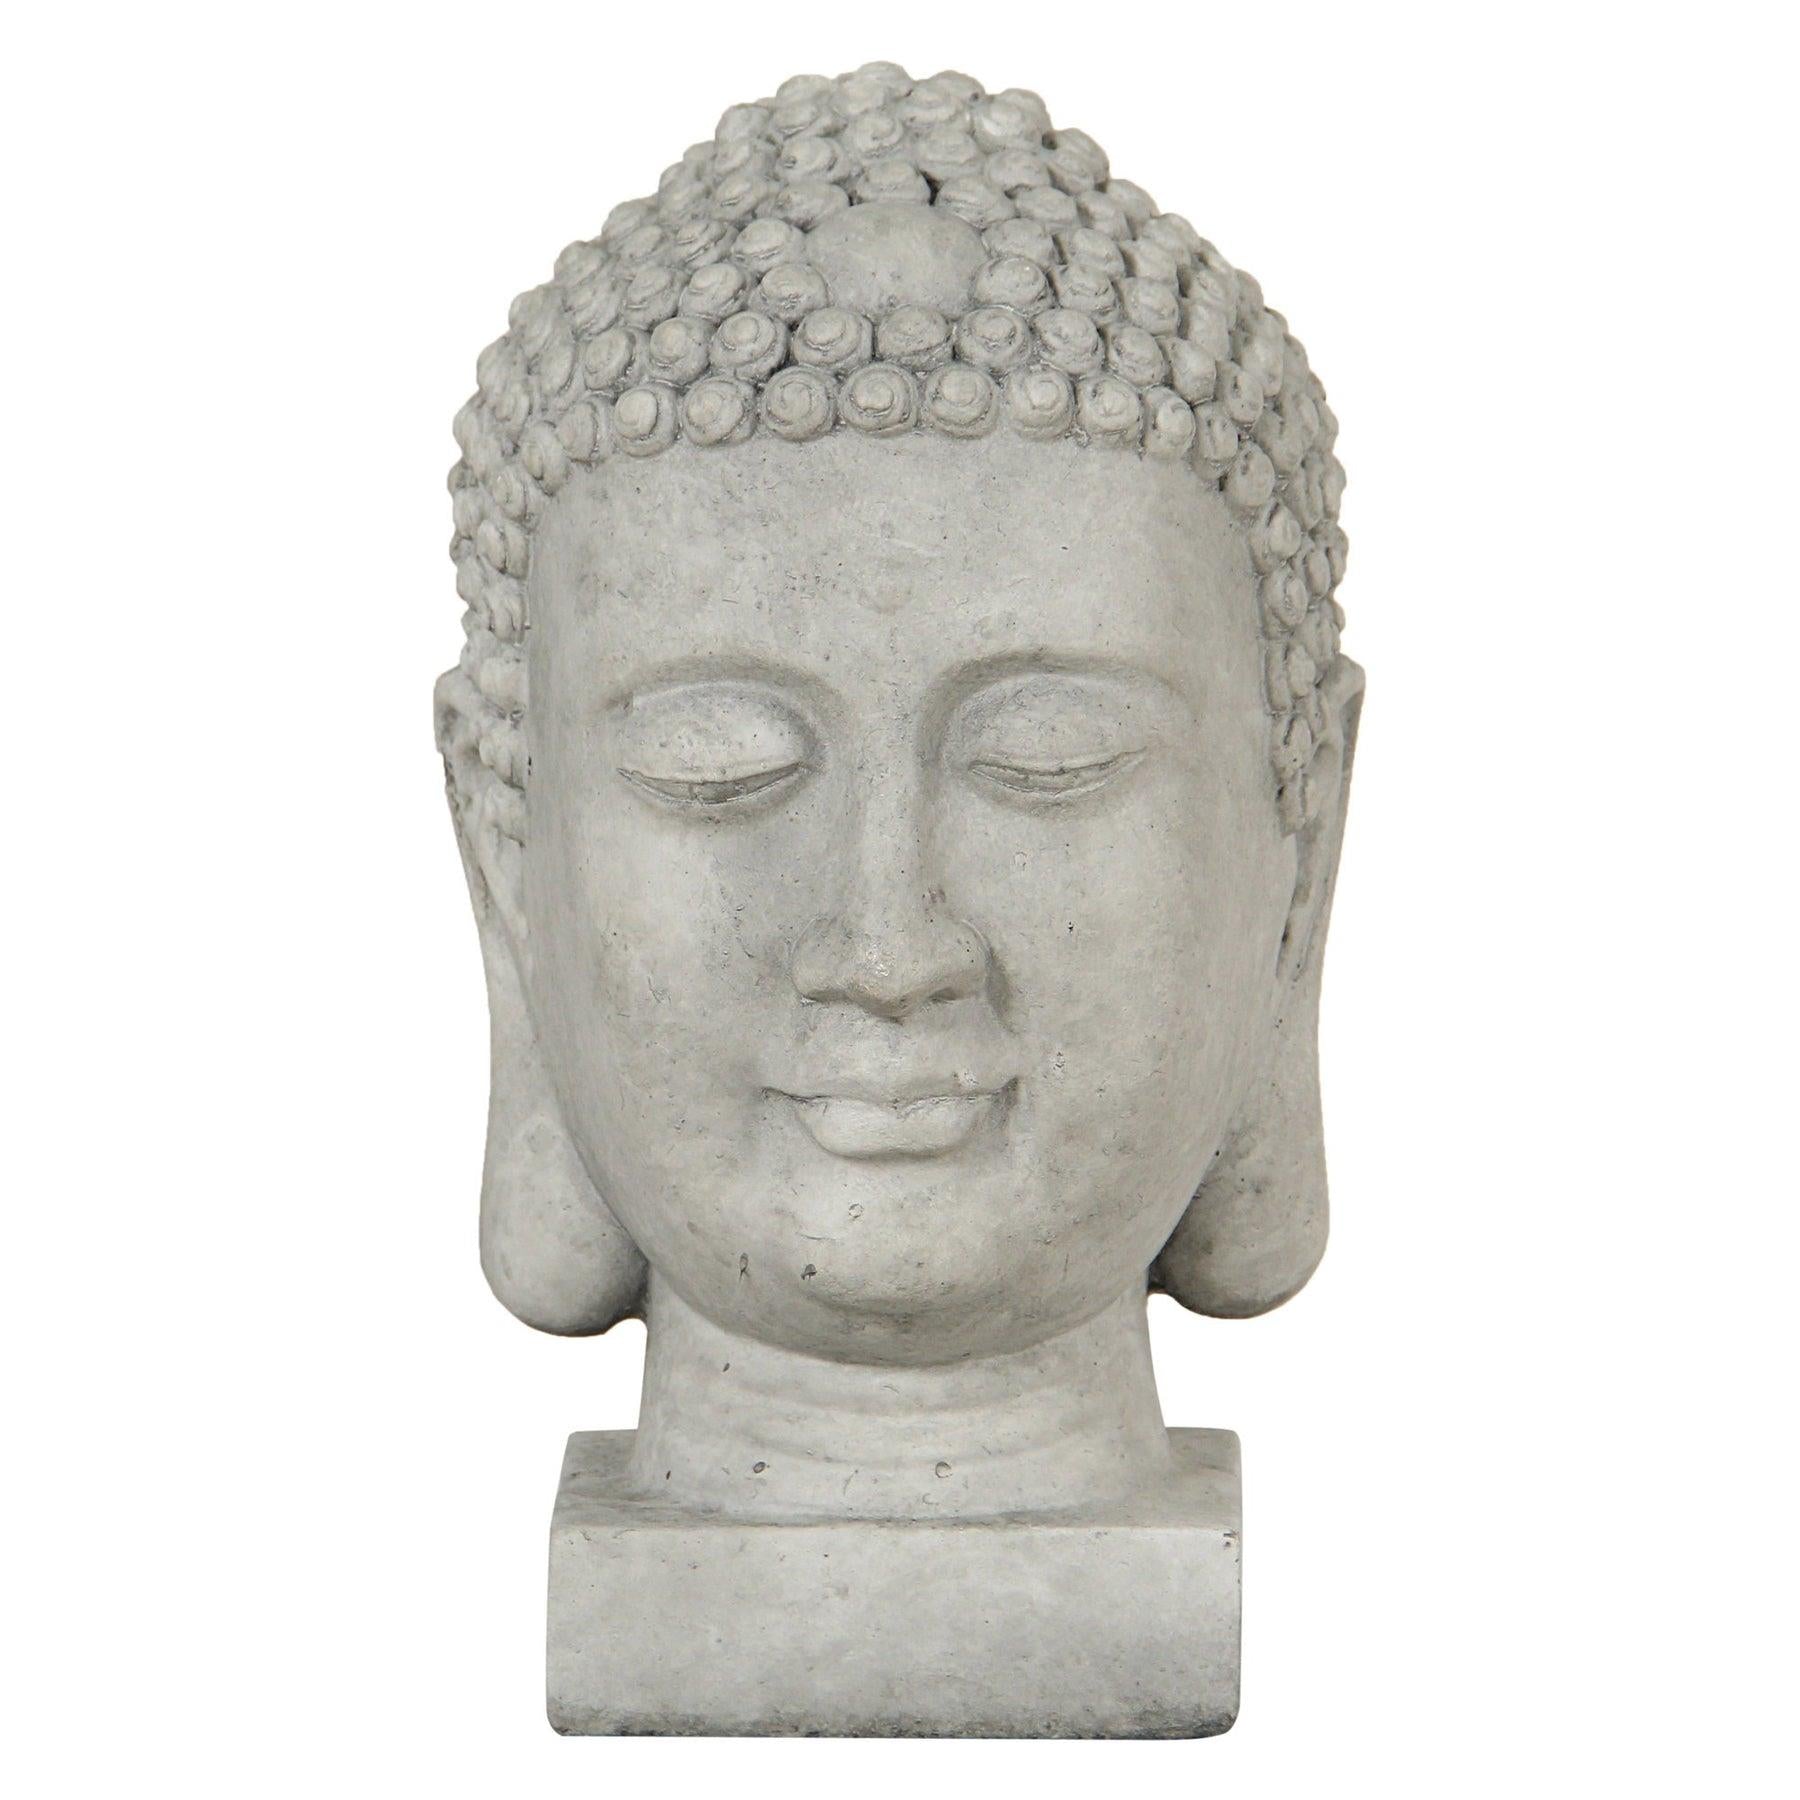 Ash Grey Ficonstone Buddha Head